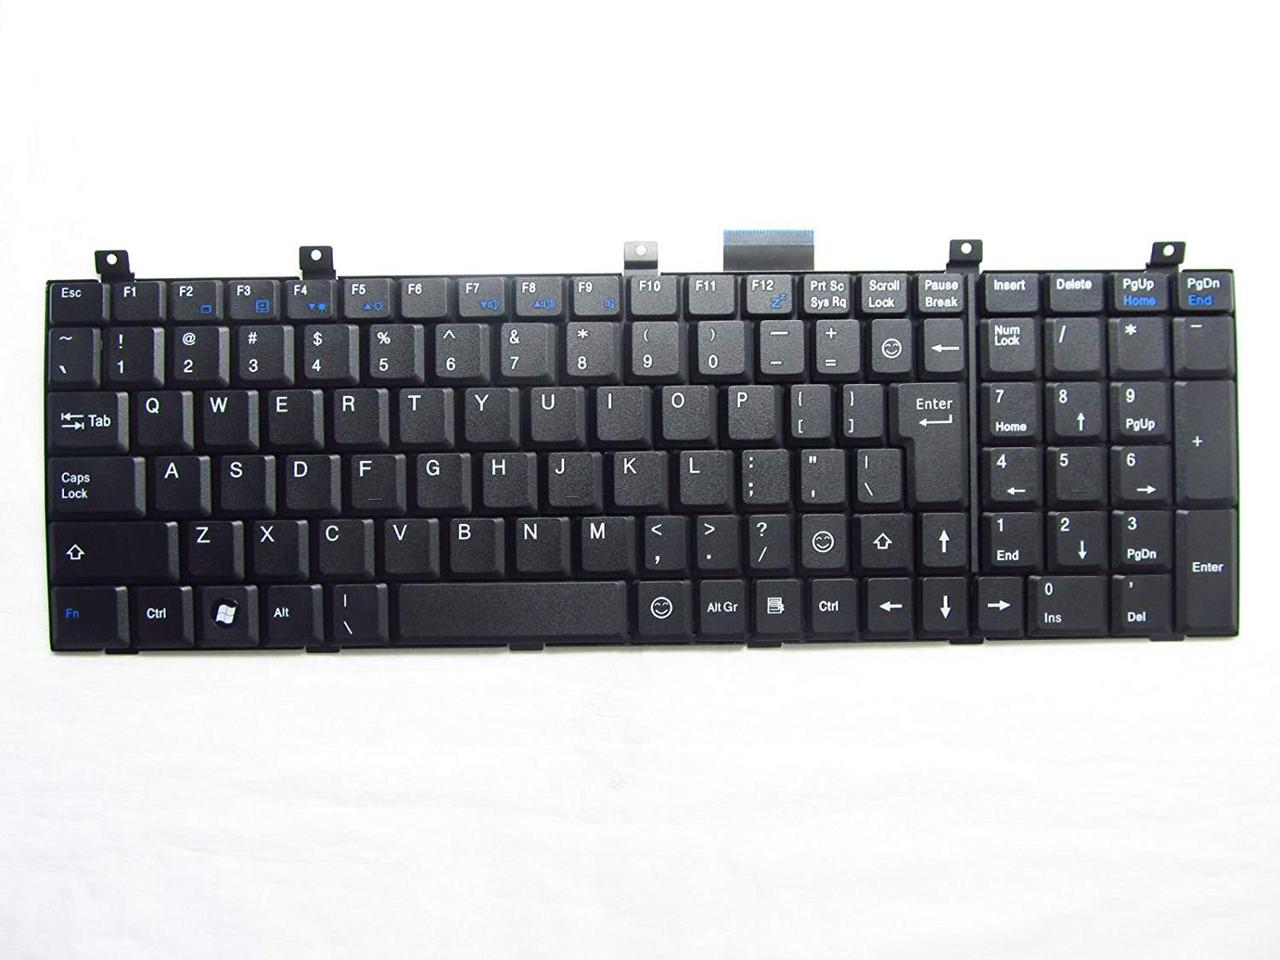 Клавиатура для ноутбука MSI CX605